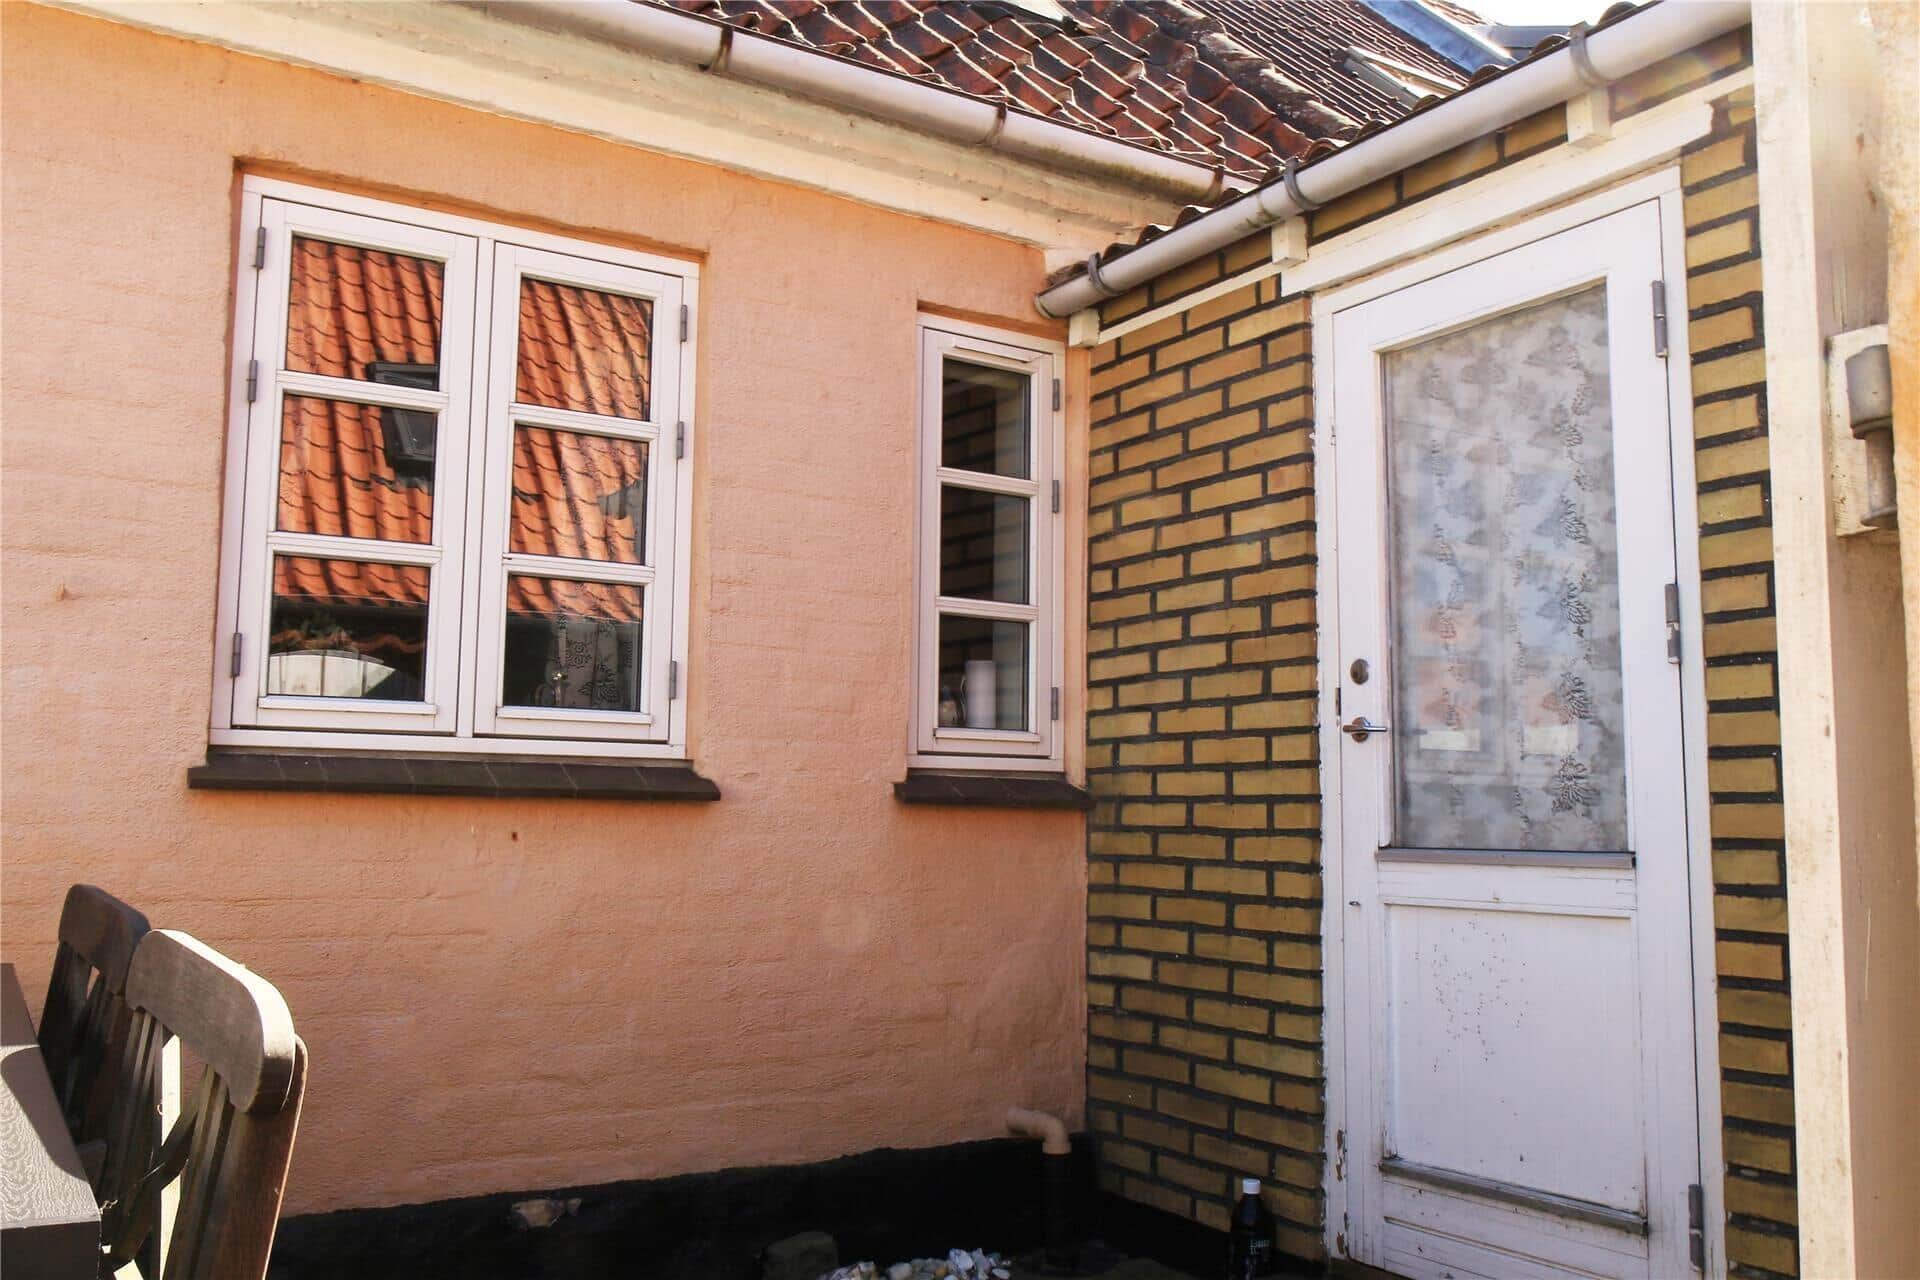 Afbeelding 1-3 Vakantiehuis M70168, Færgestræde 57, DK - 5960 Marstal